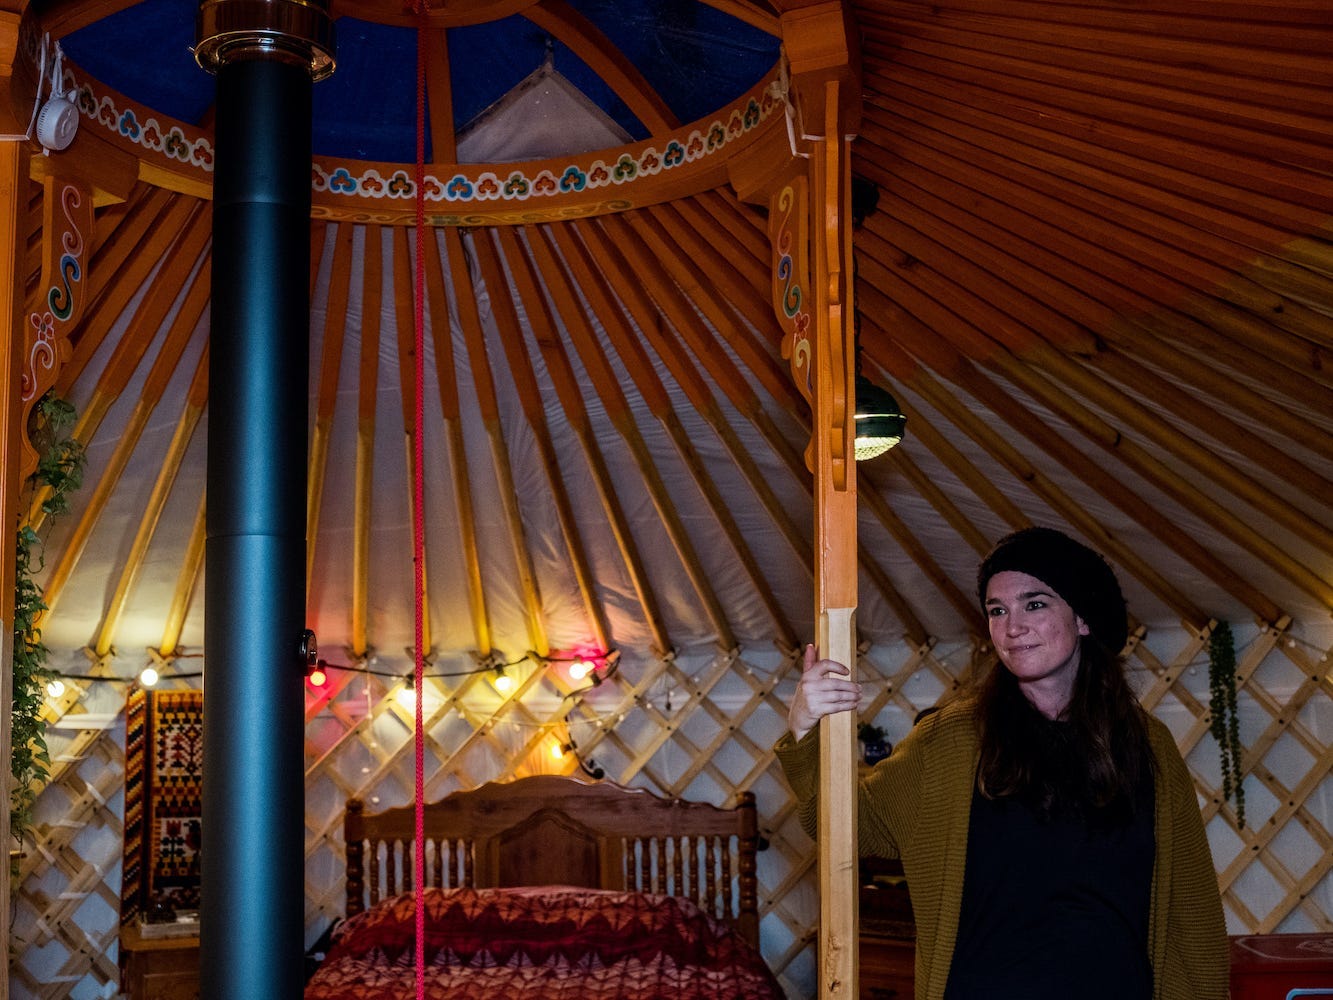 Chris Heijmans stands in her yurt.